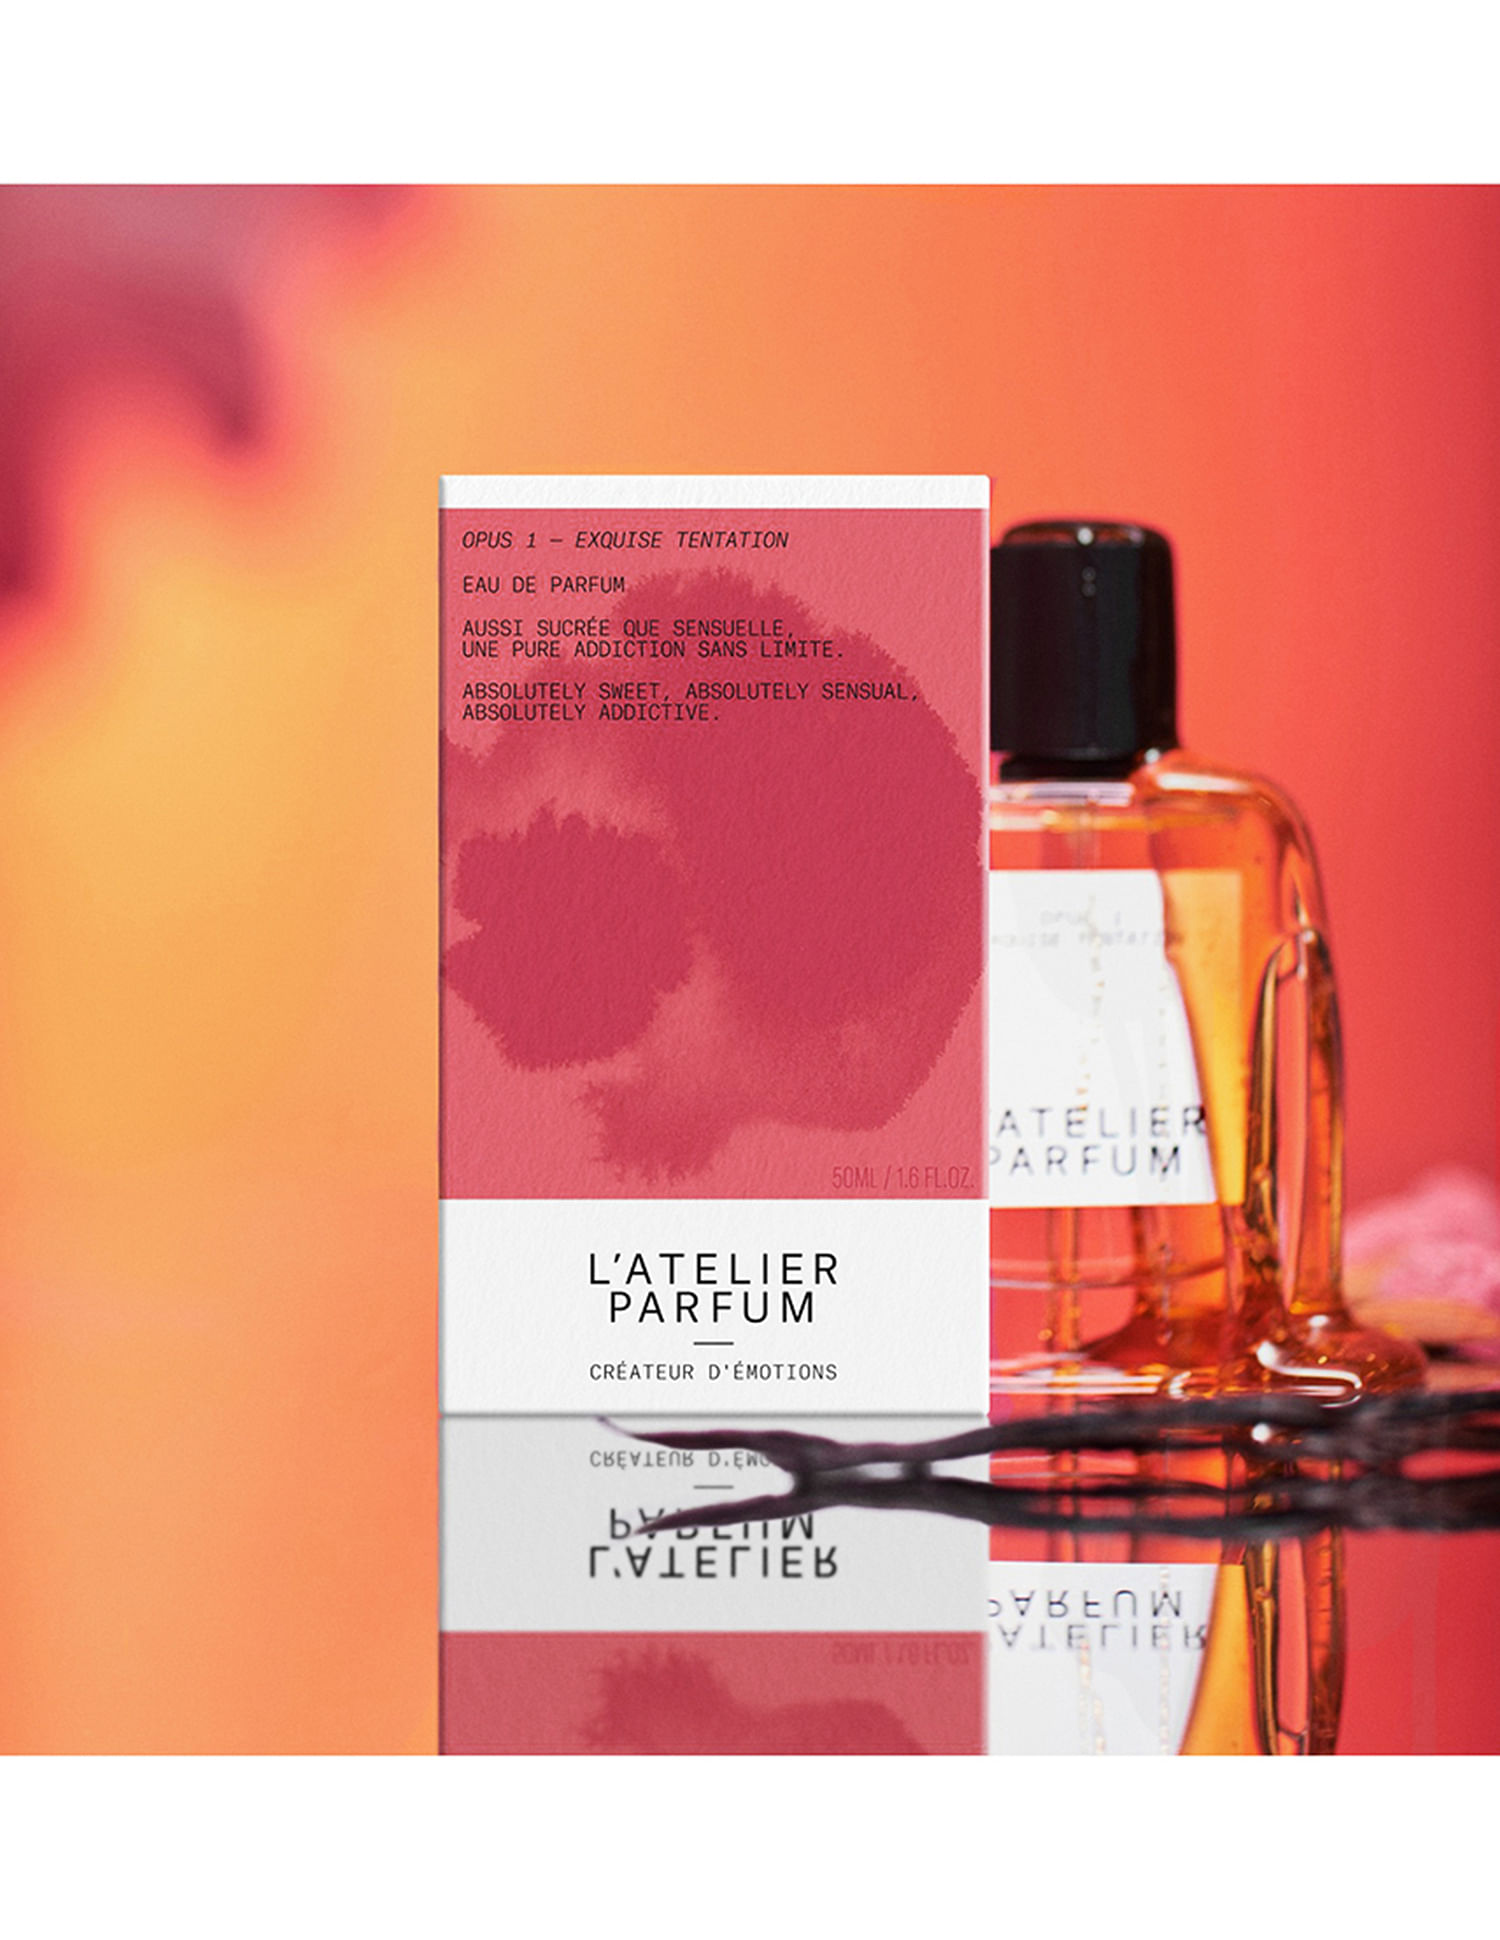 Buy L'Atelier Parfum Exquise Tentation Eau De Parfum - NNNOW.com